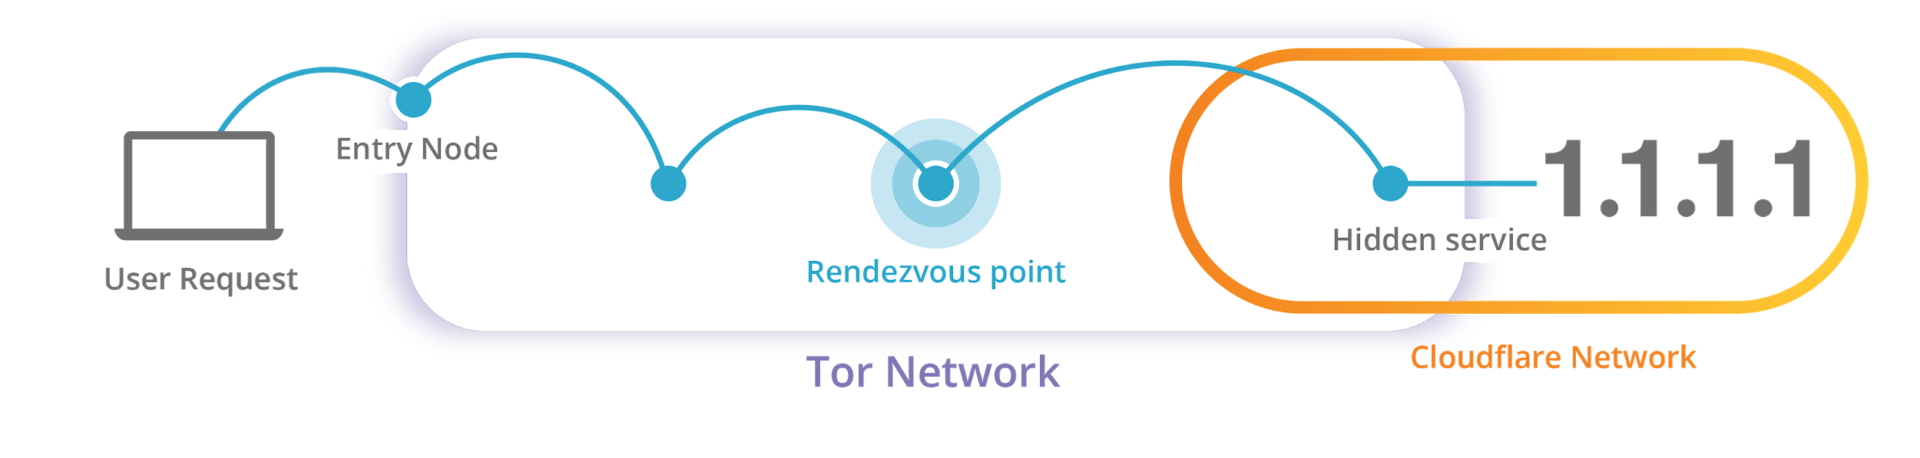 Cloudflare представила скрытый сервис Tor для DNS-преобразователя 1.1.1.1 1